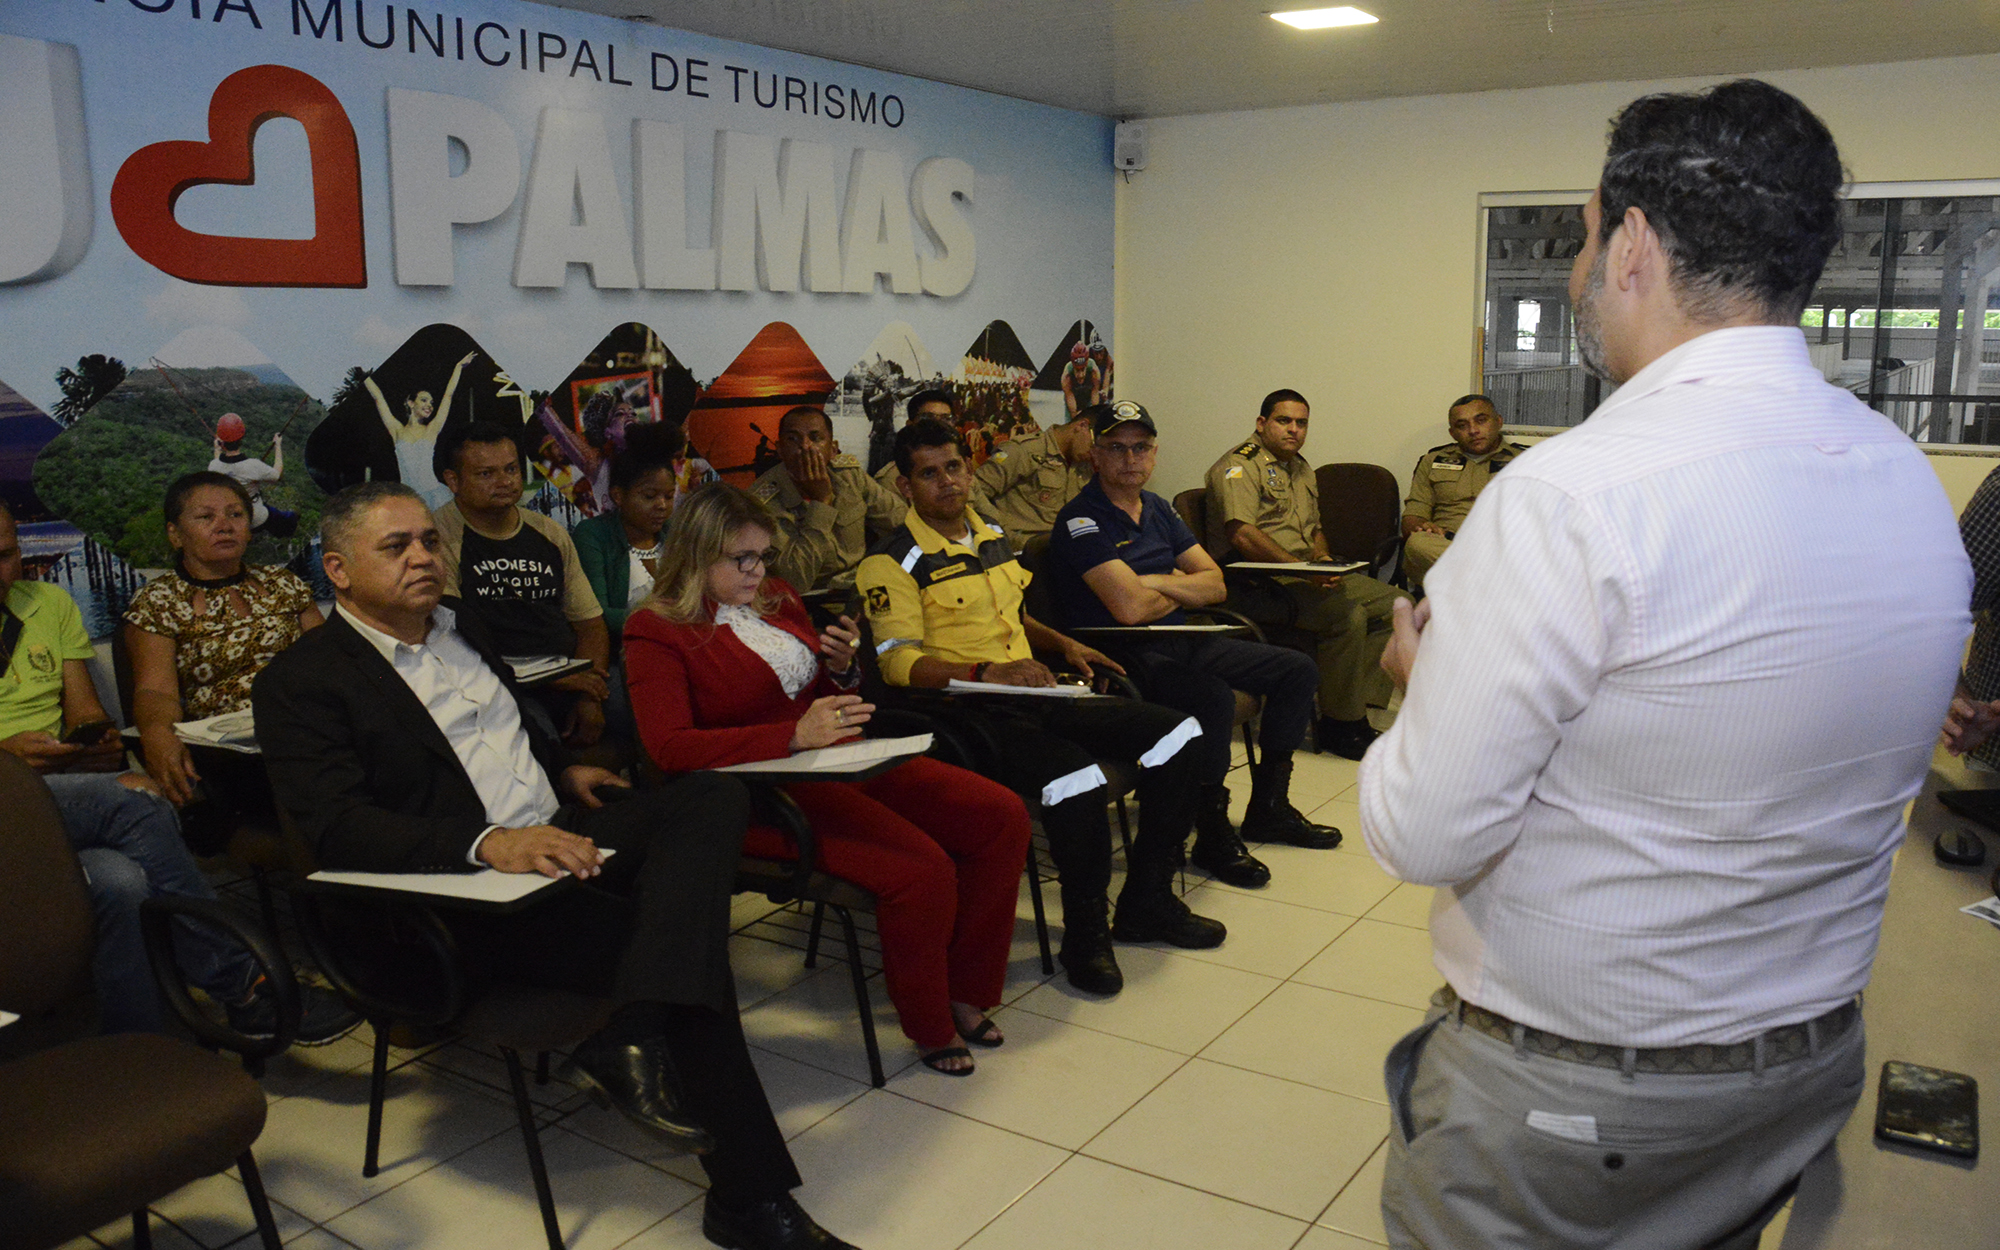 Carnaval 2020: Forças de segurança de Palmas se reúnem para garantir segurança nos eventos